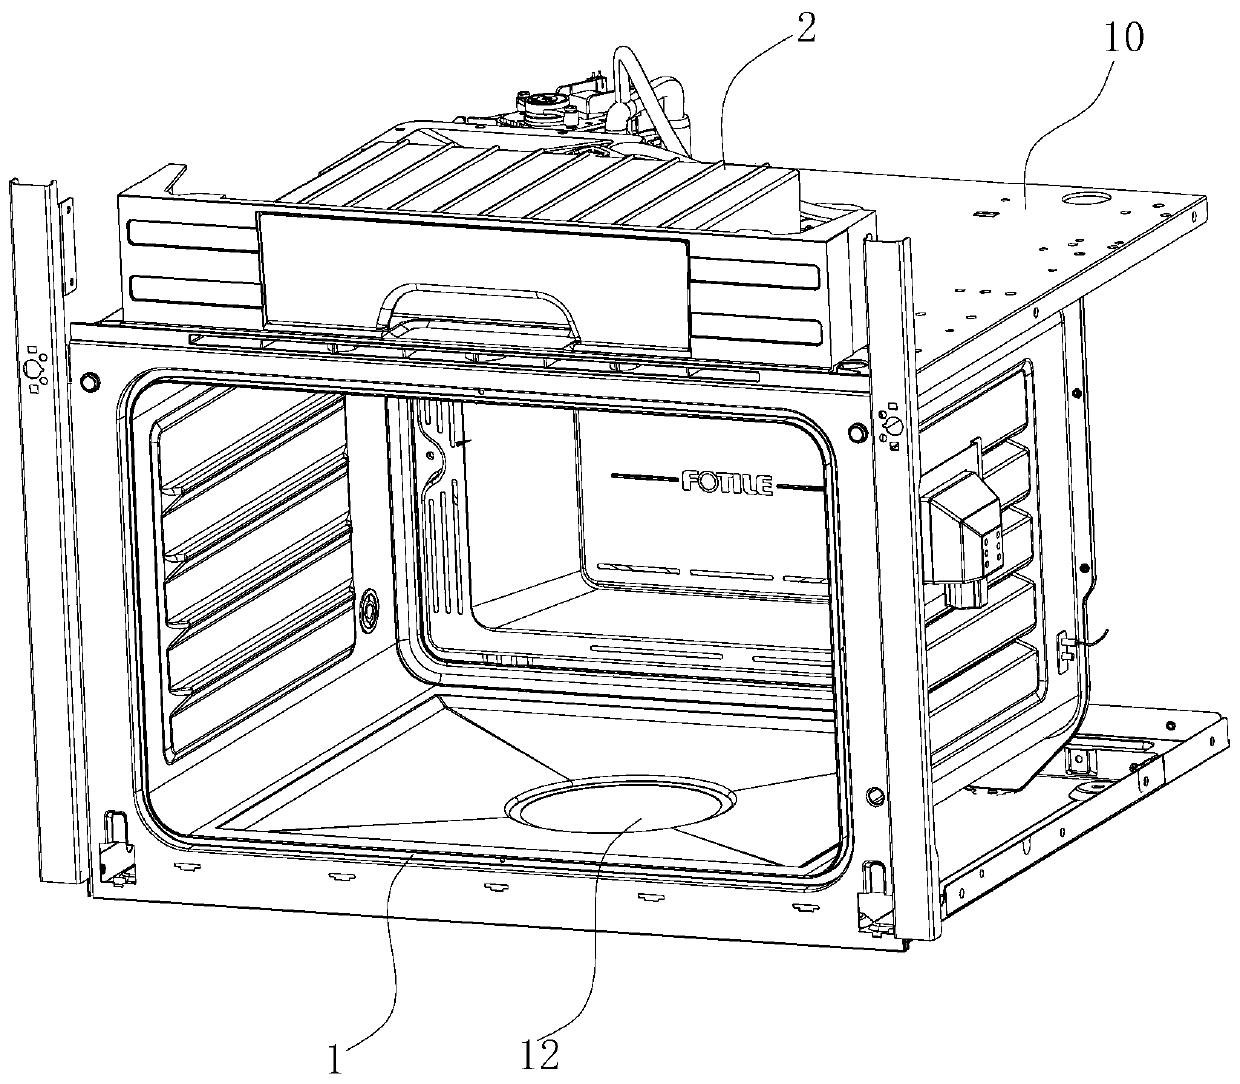 Steam low-displacement steam box